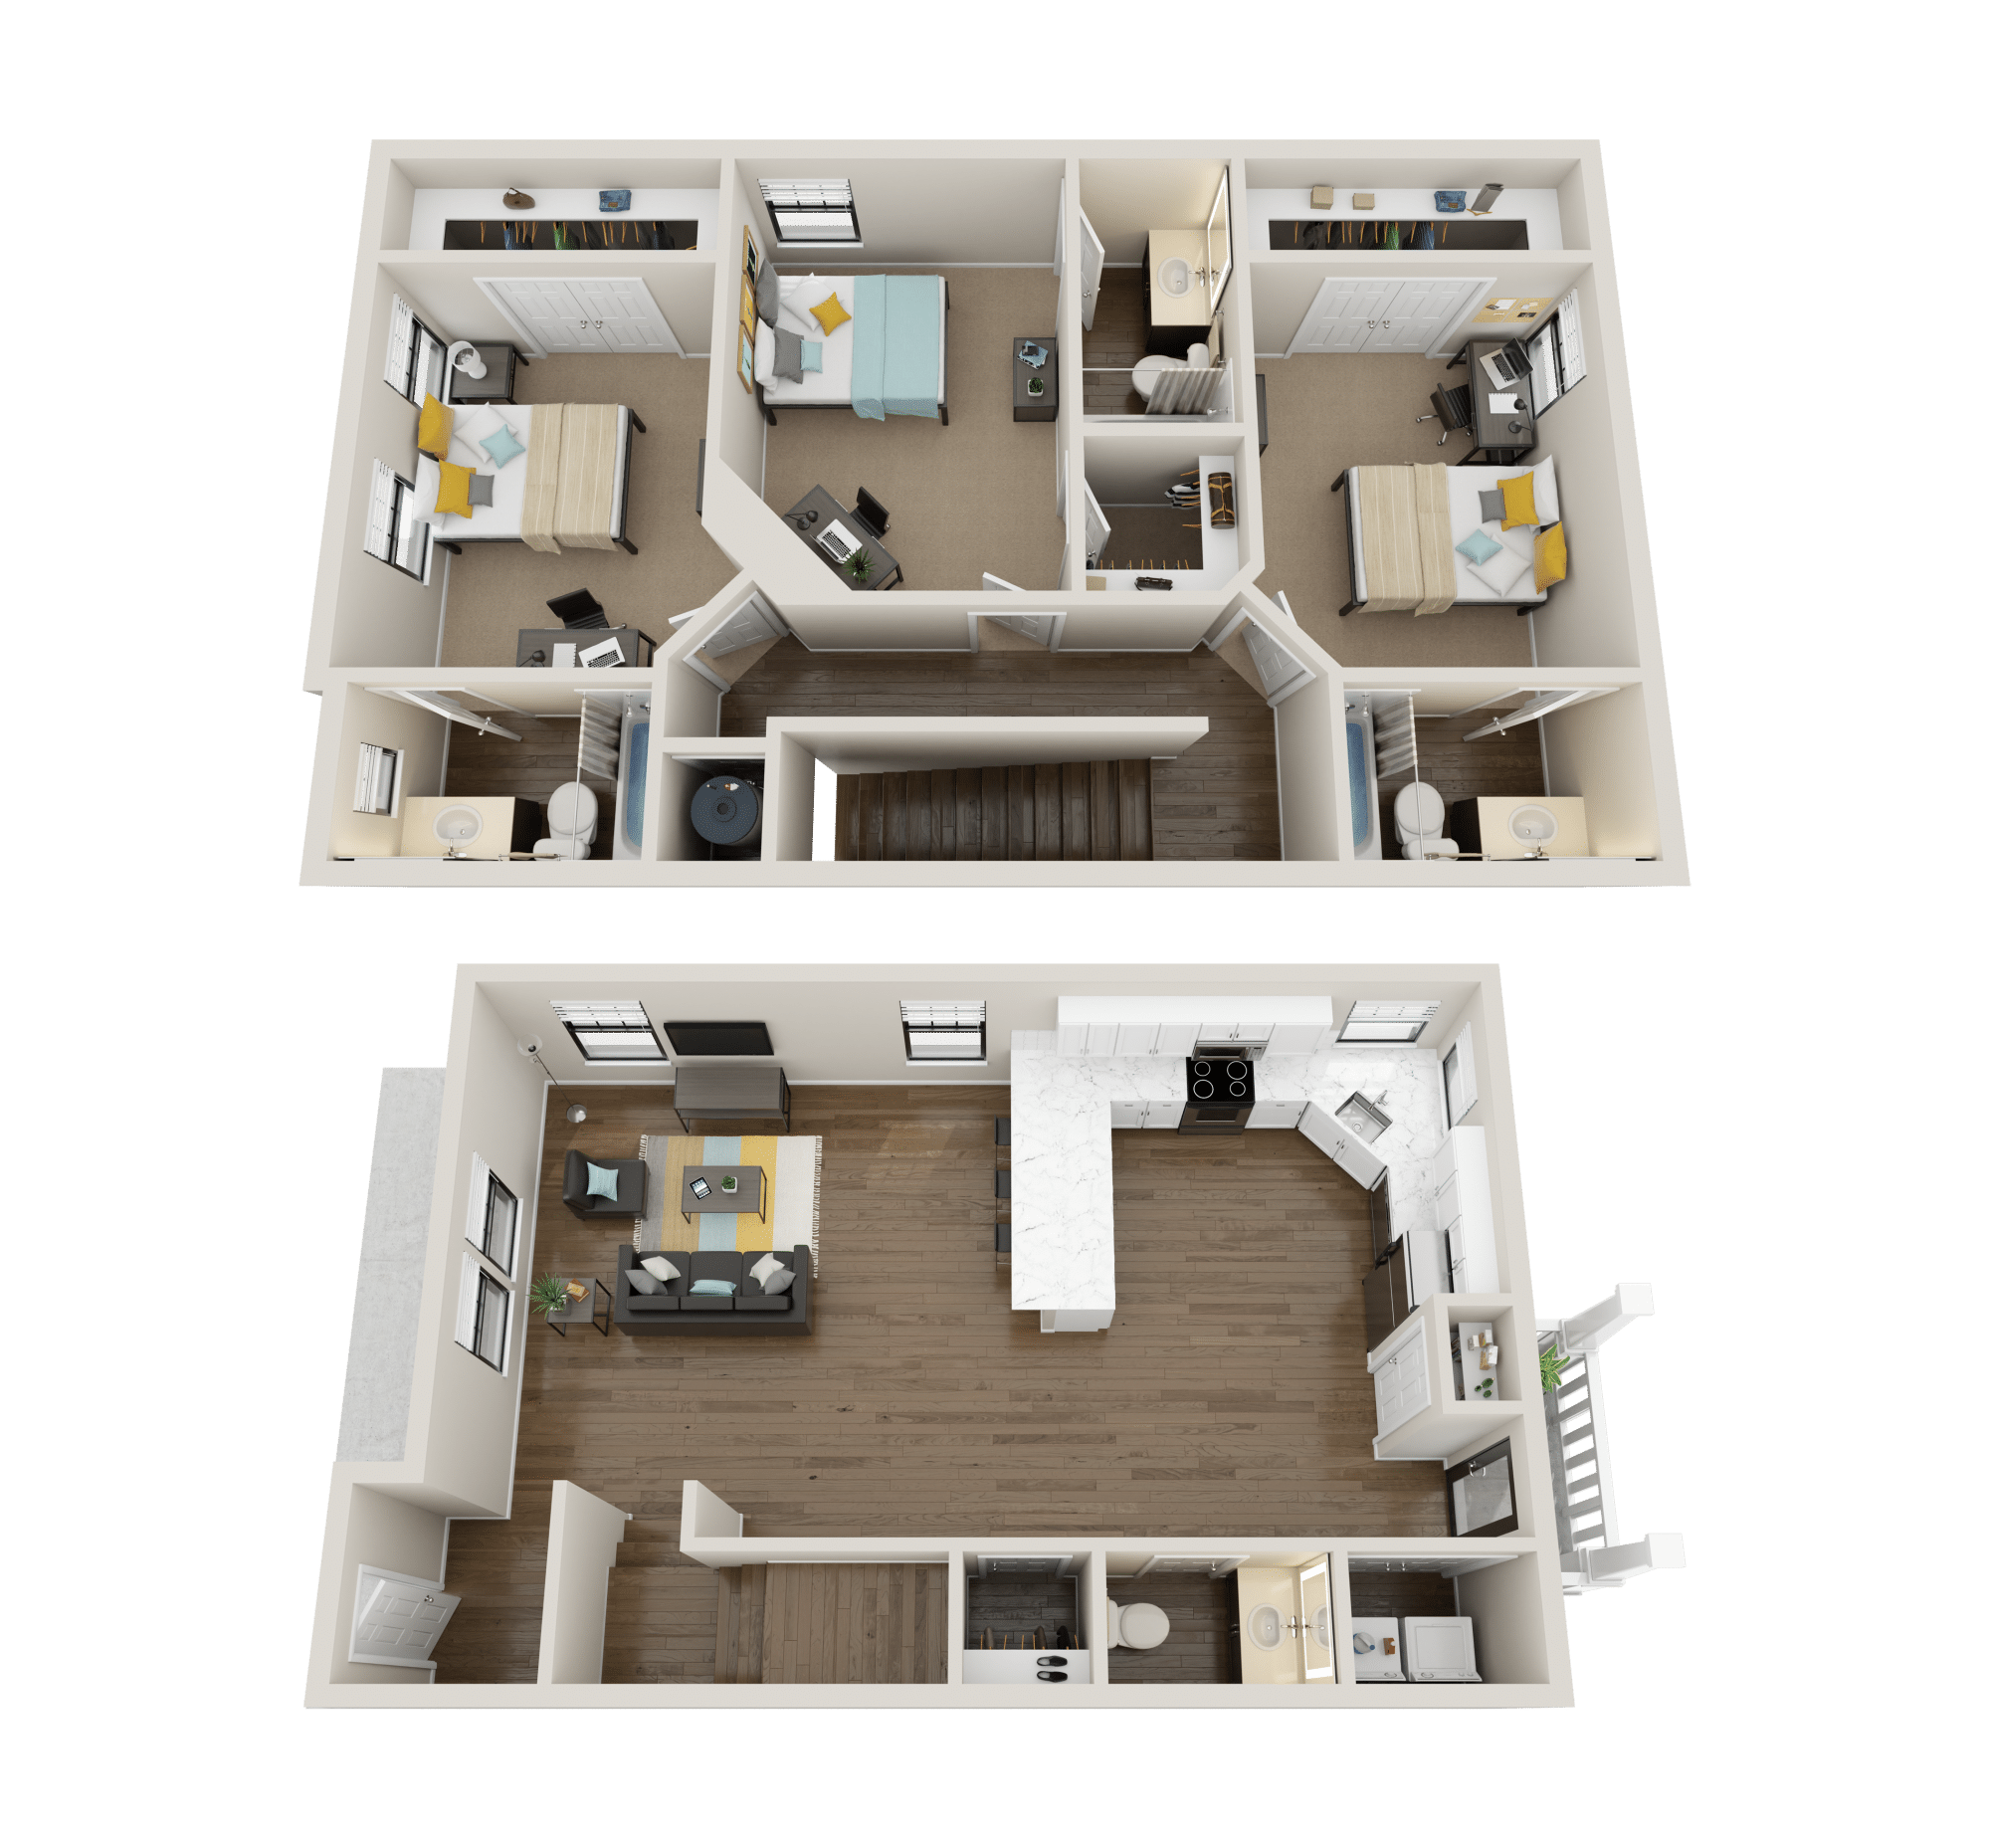 3x3.5 premium floor plan collective at clemson off campus apartments